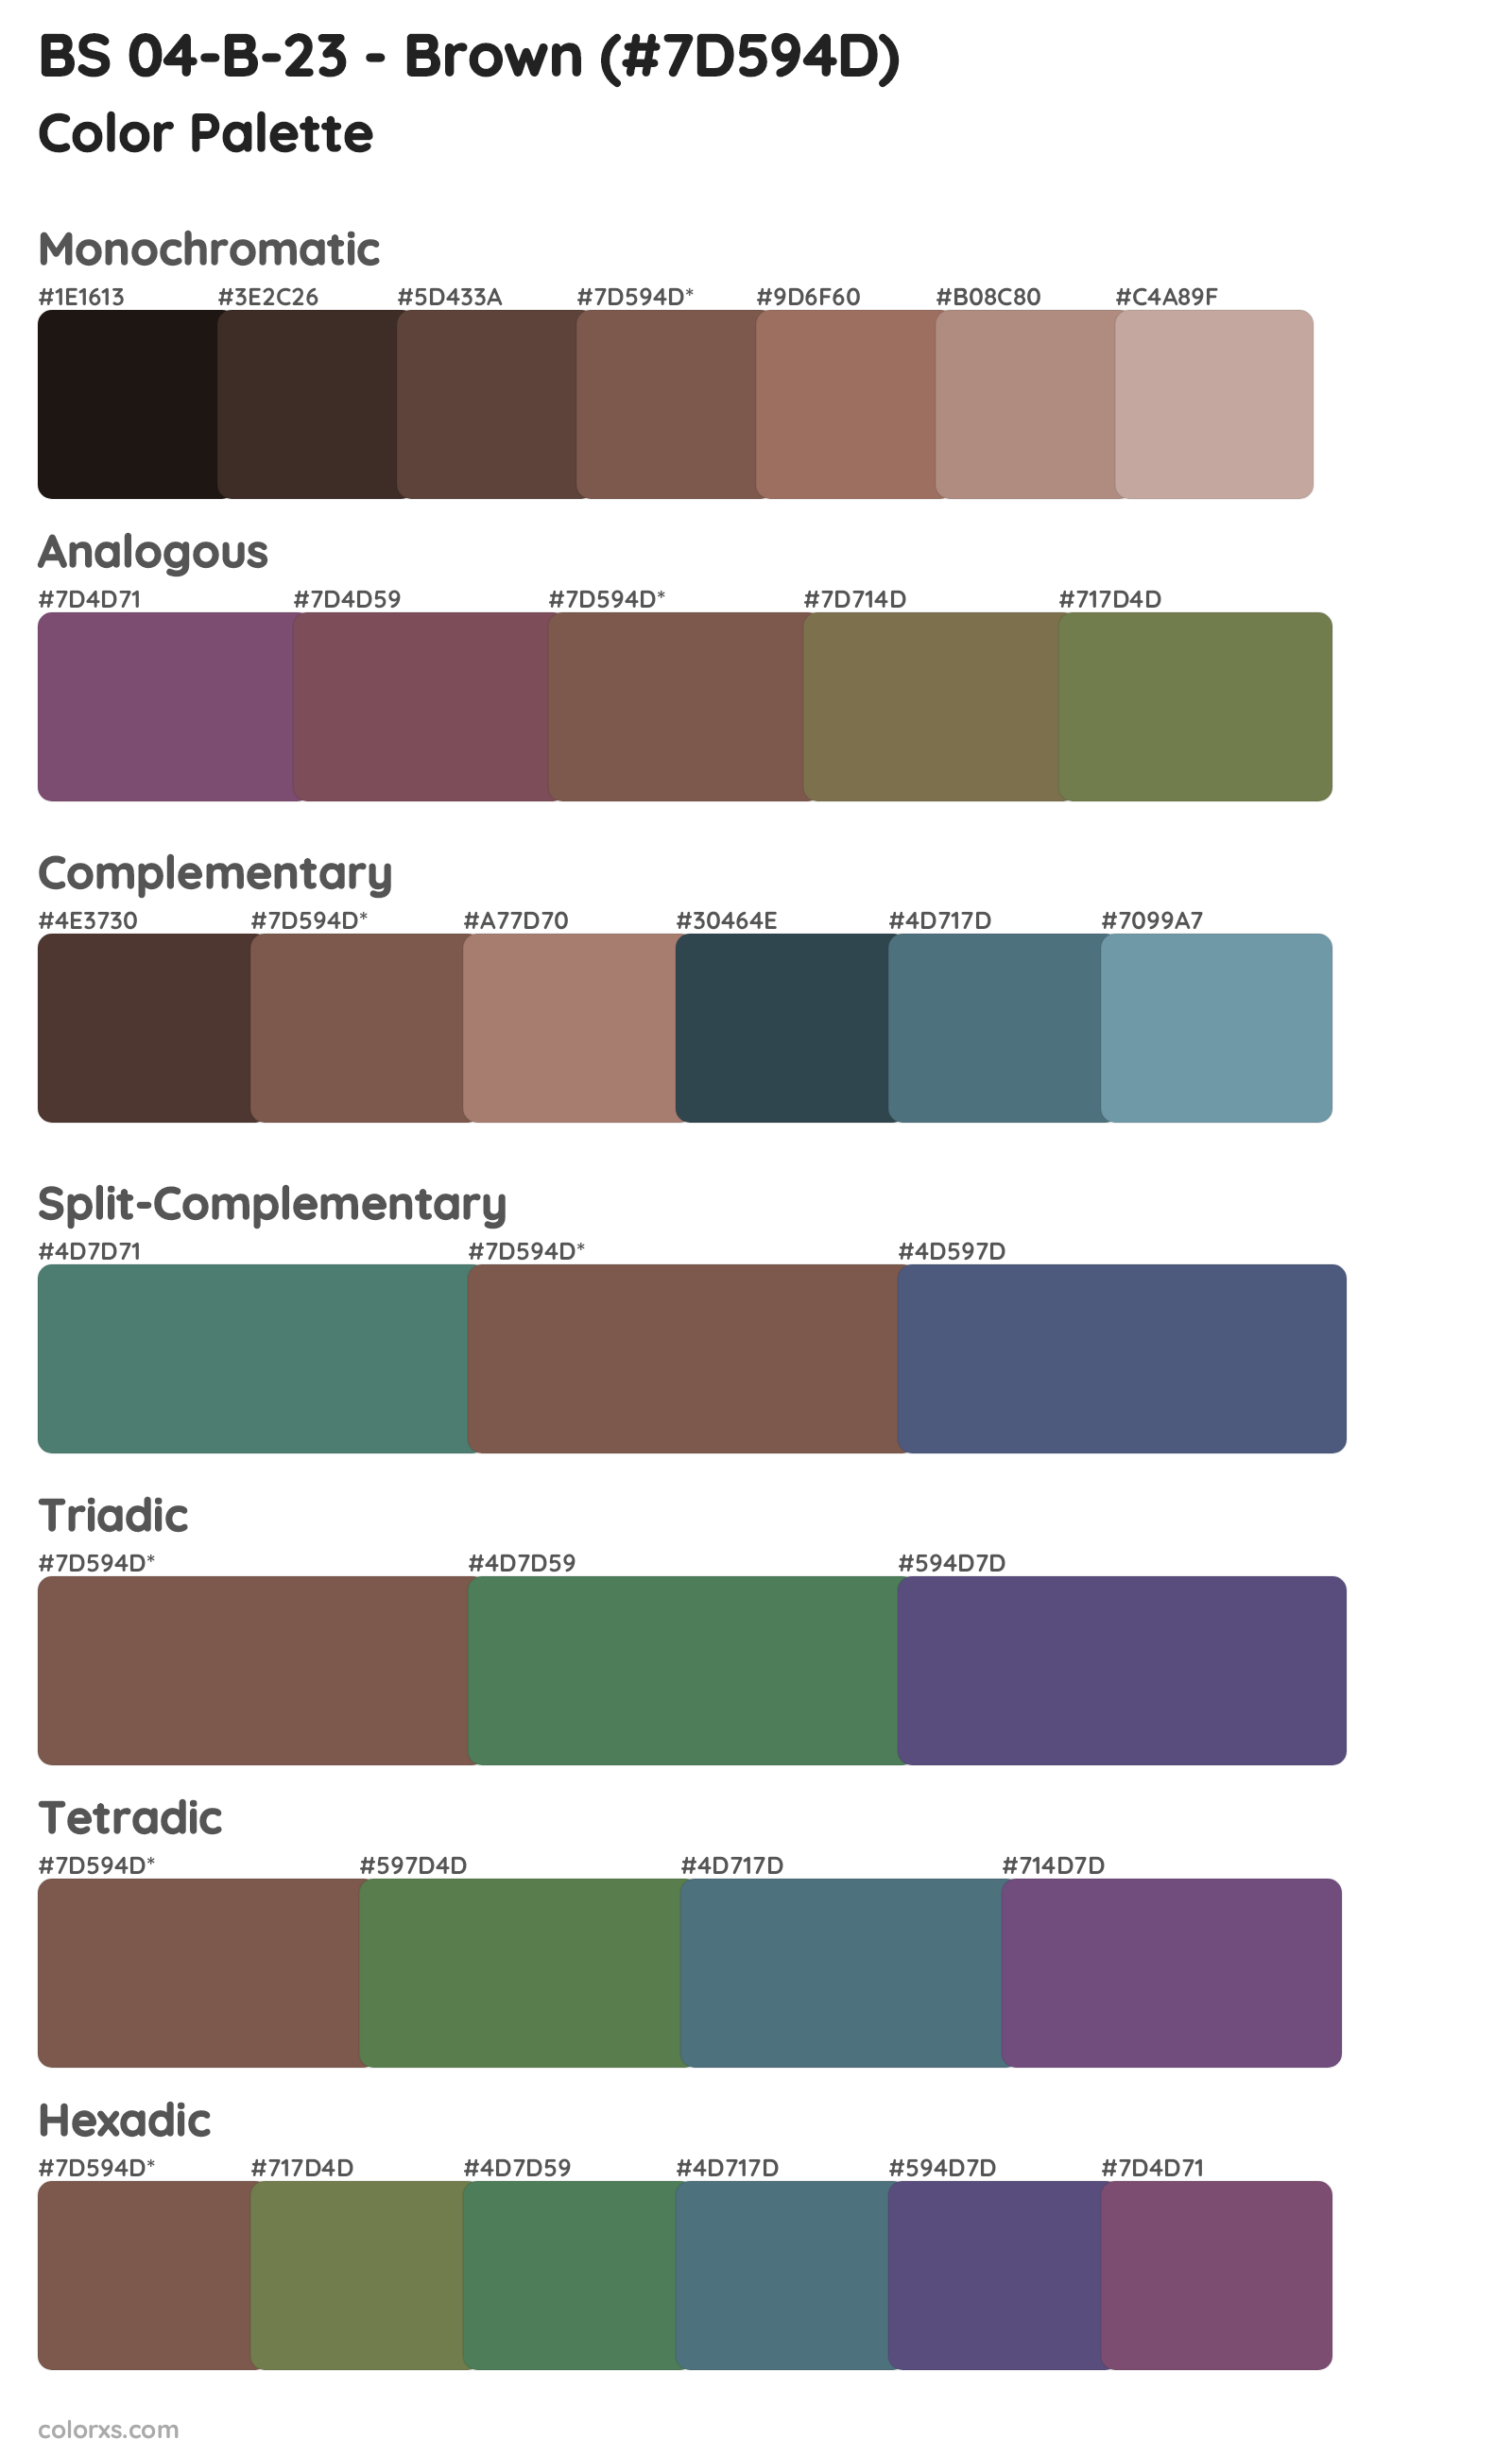 BS 04-B-23 - Brown Color Scheme Palettes